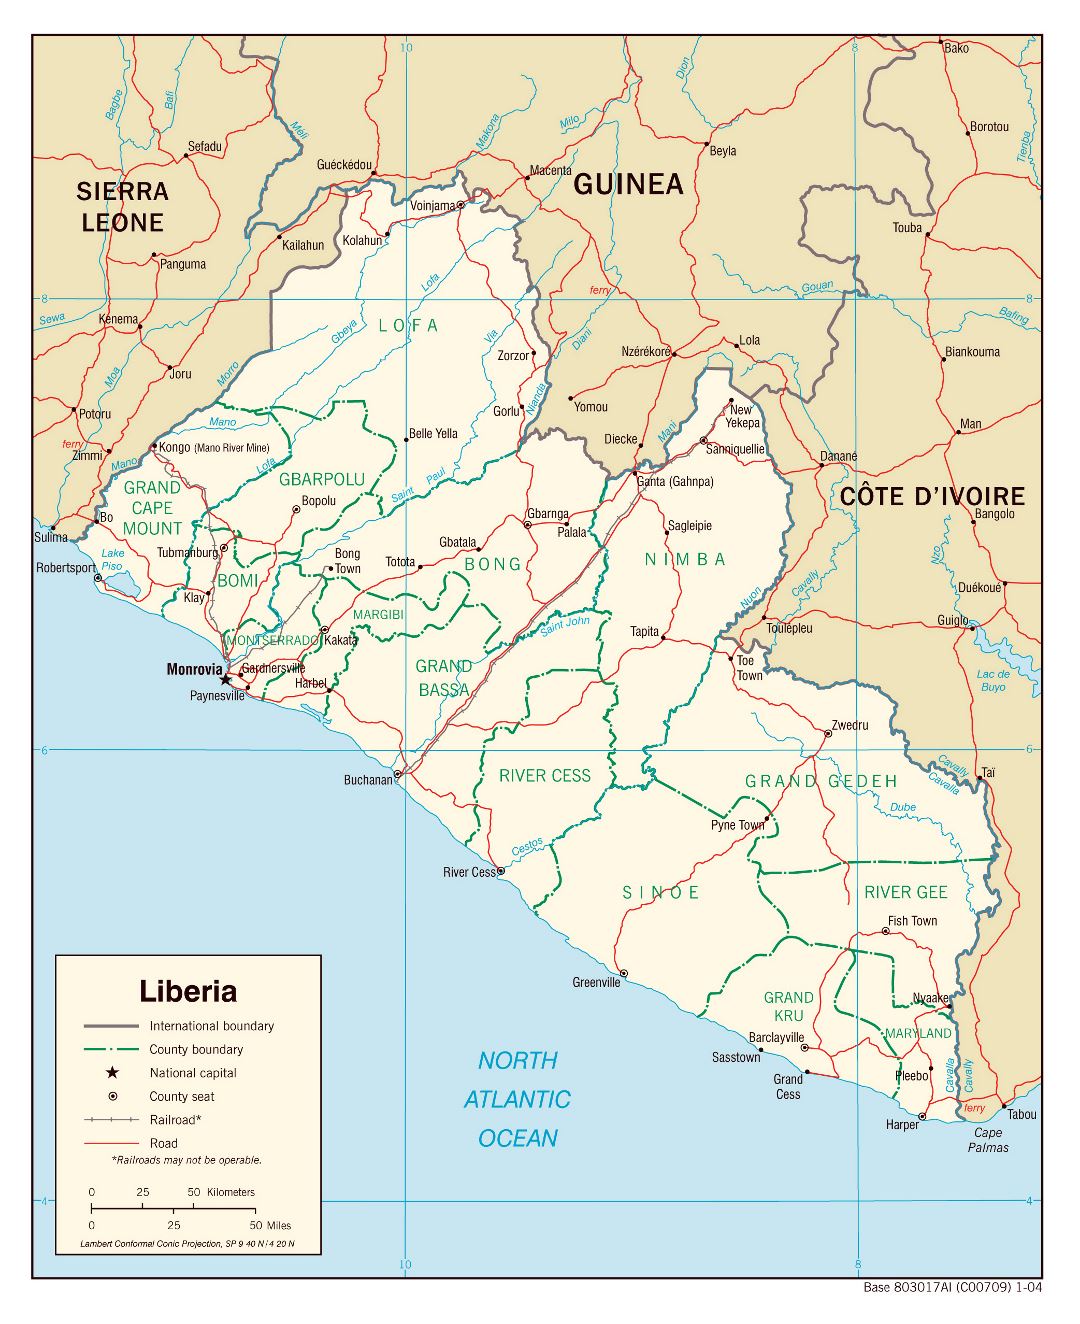 Большая детальная политическая и административная карта Либерии с дорогами, железными дорогами и крупными городами - 2004